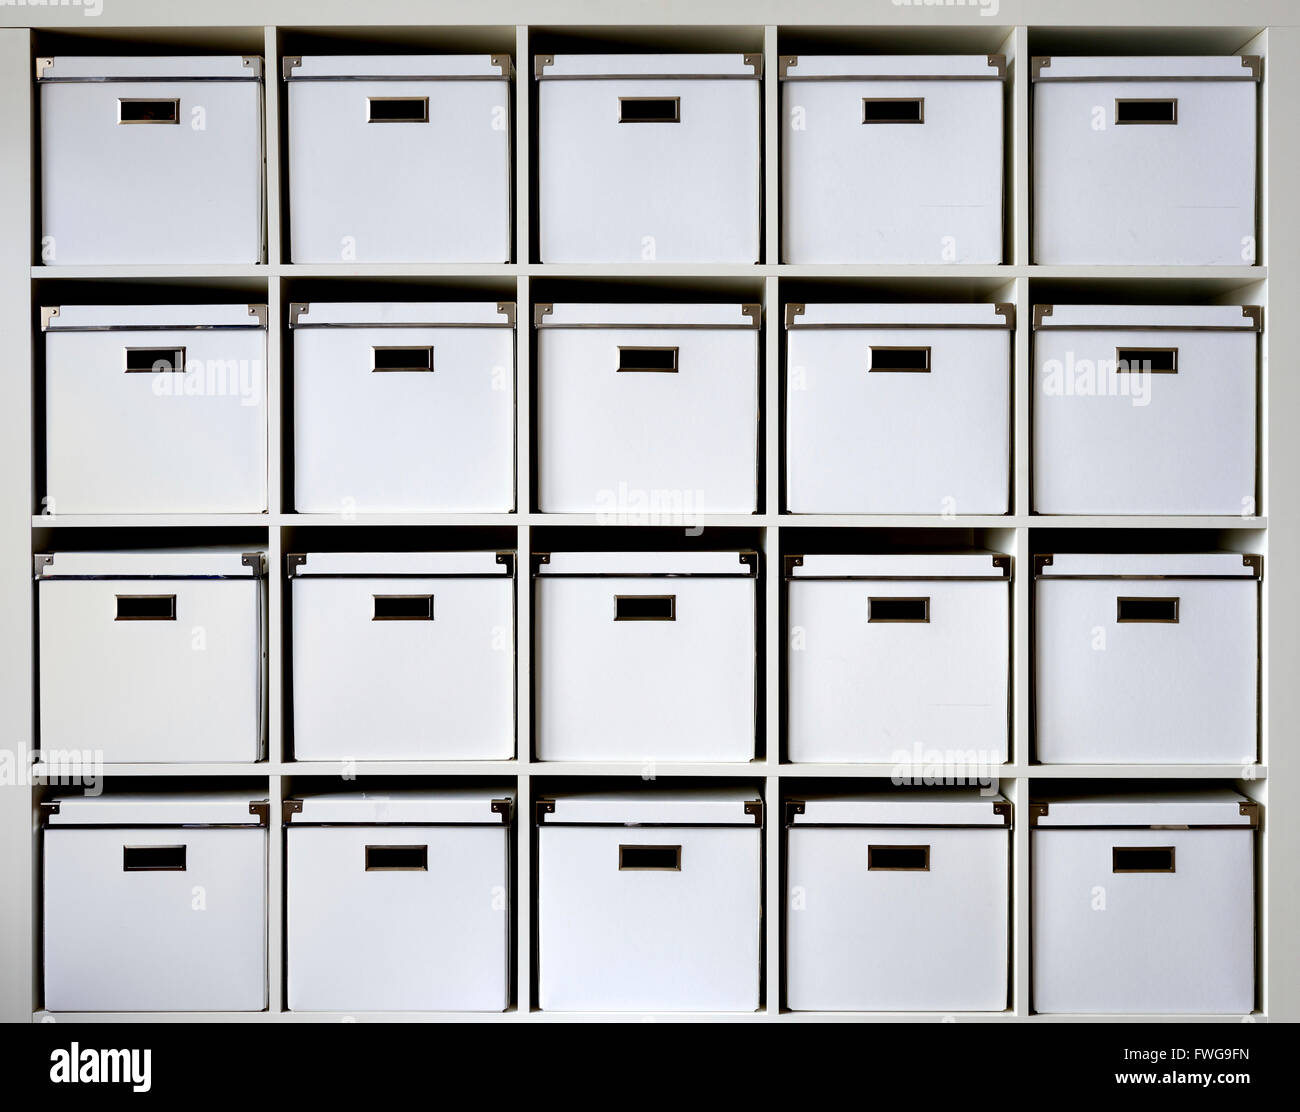 Storage boxes on shelves. Stock Photo